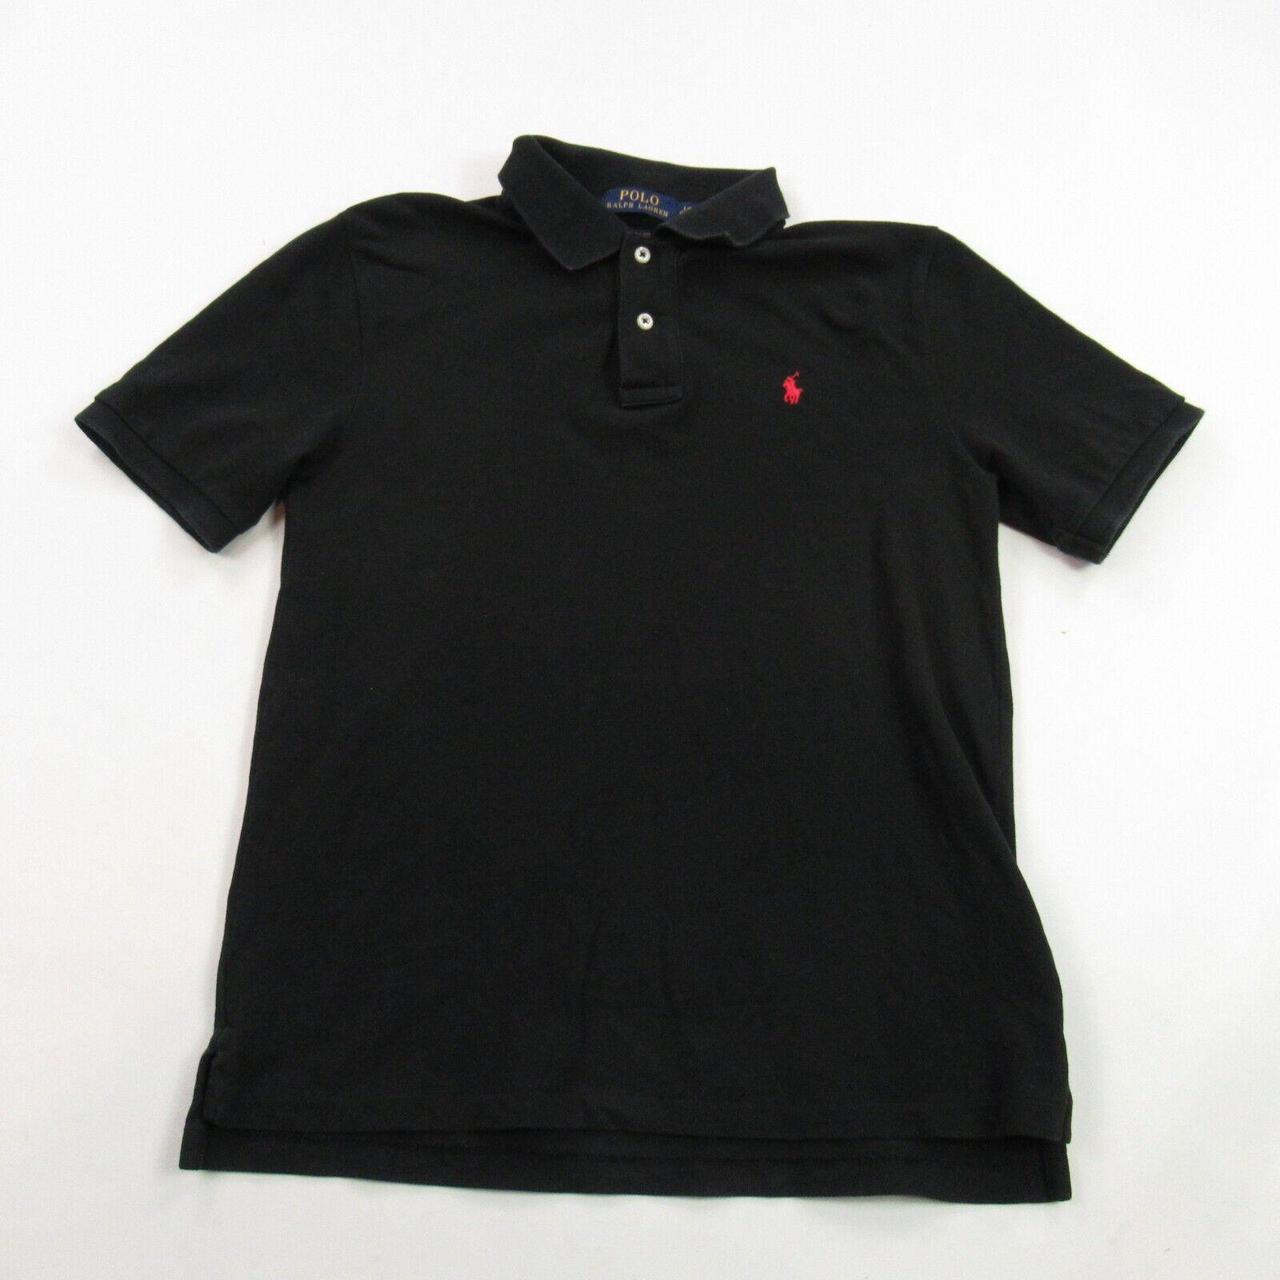 Polo Ralph Lauren Shirt Boys Large Short Sleeve... - Depop